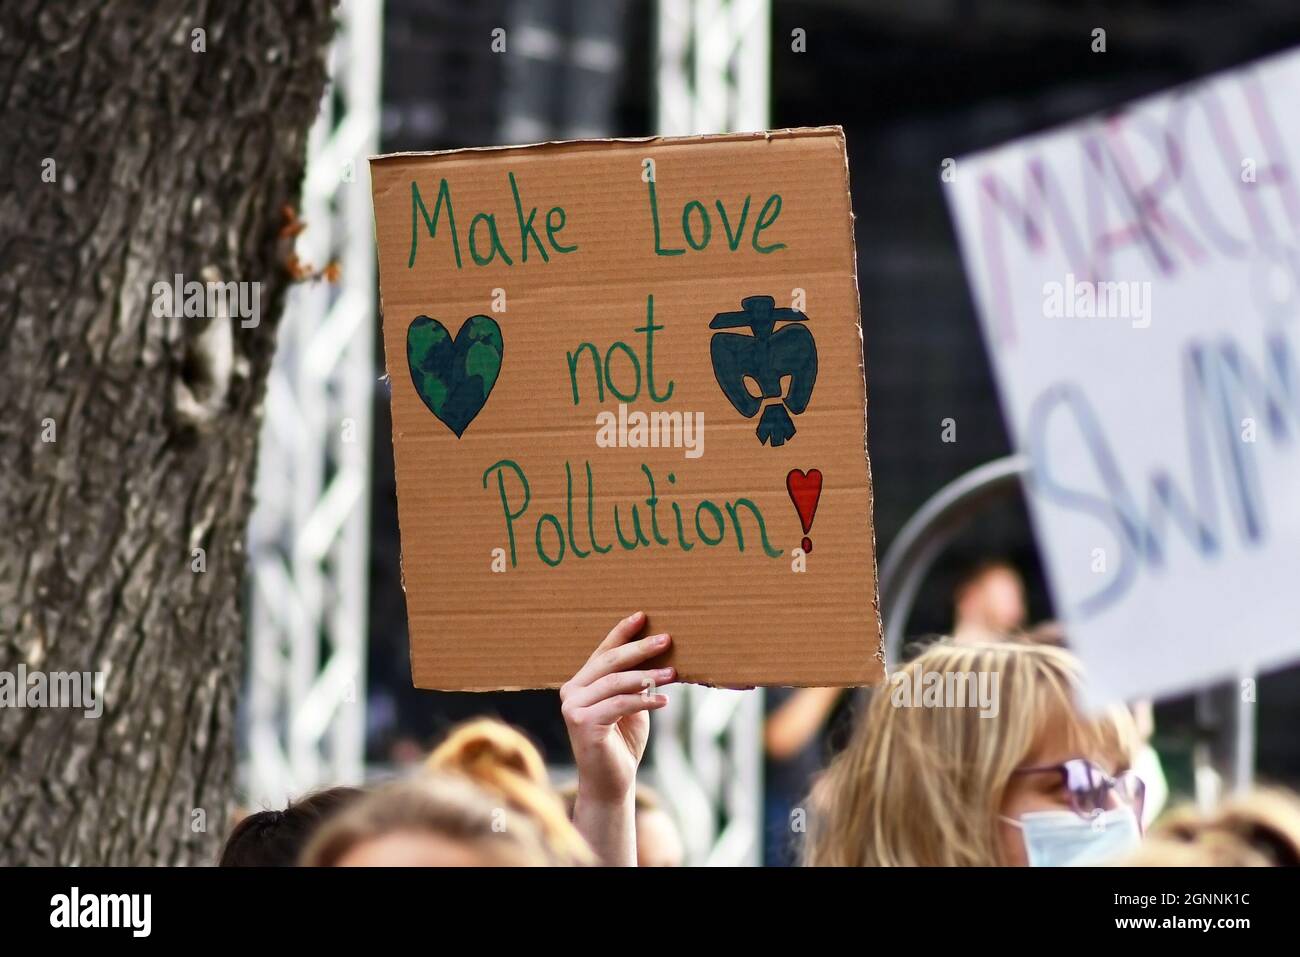 Heidelberg, Deutschland - 24. September 2021: Schild von einer jungen Frau gehalten, die bei der Global Climate Strike Demonstration „nicht cool“ sagte Stockfoto